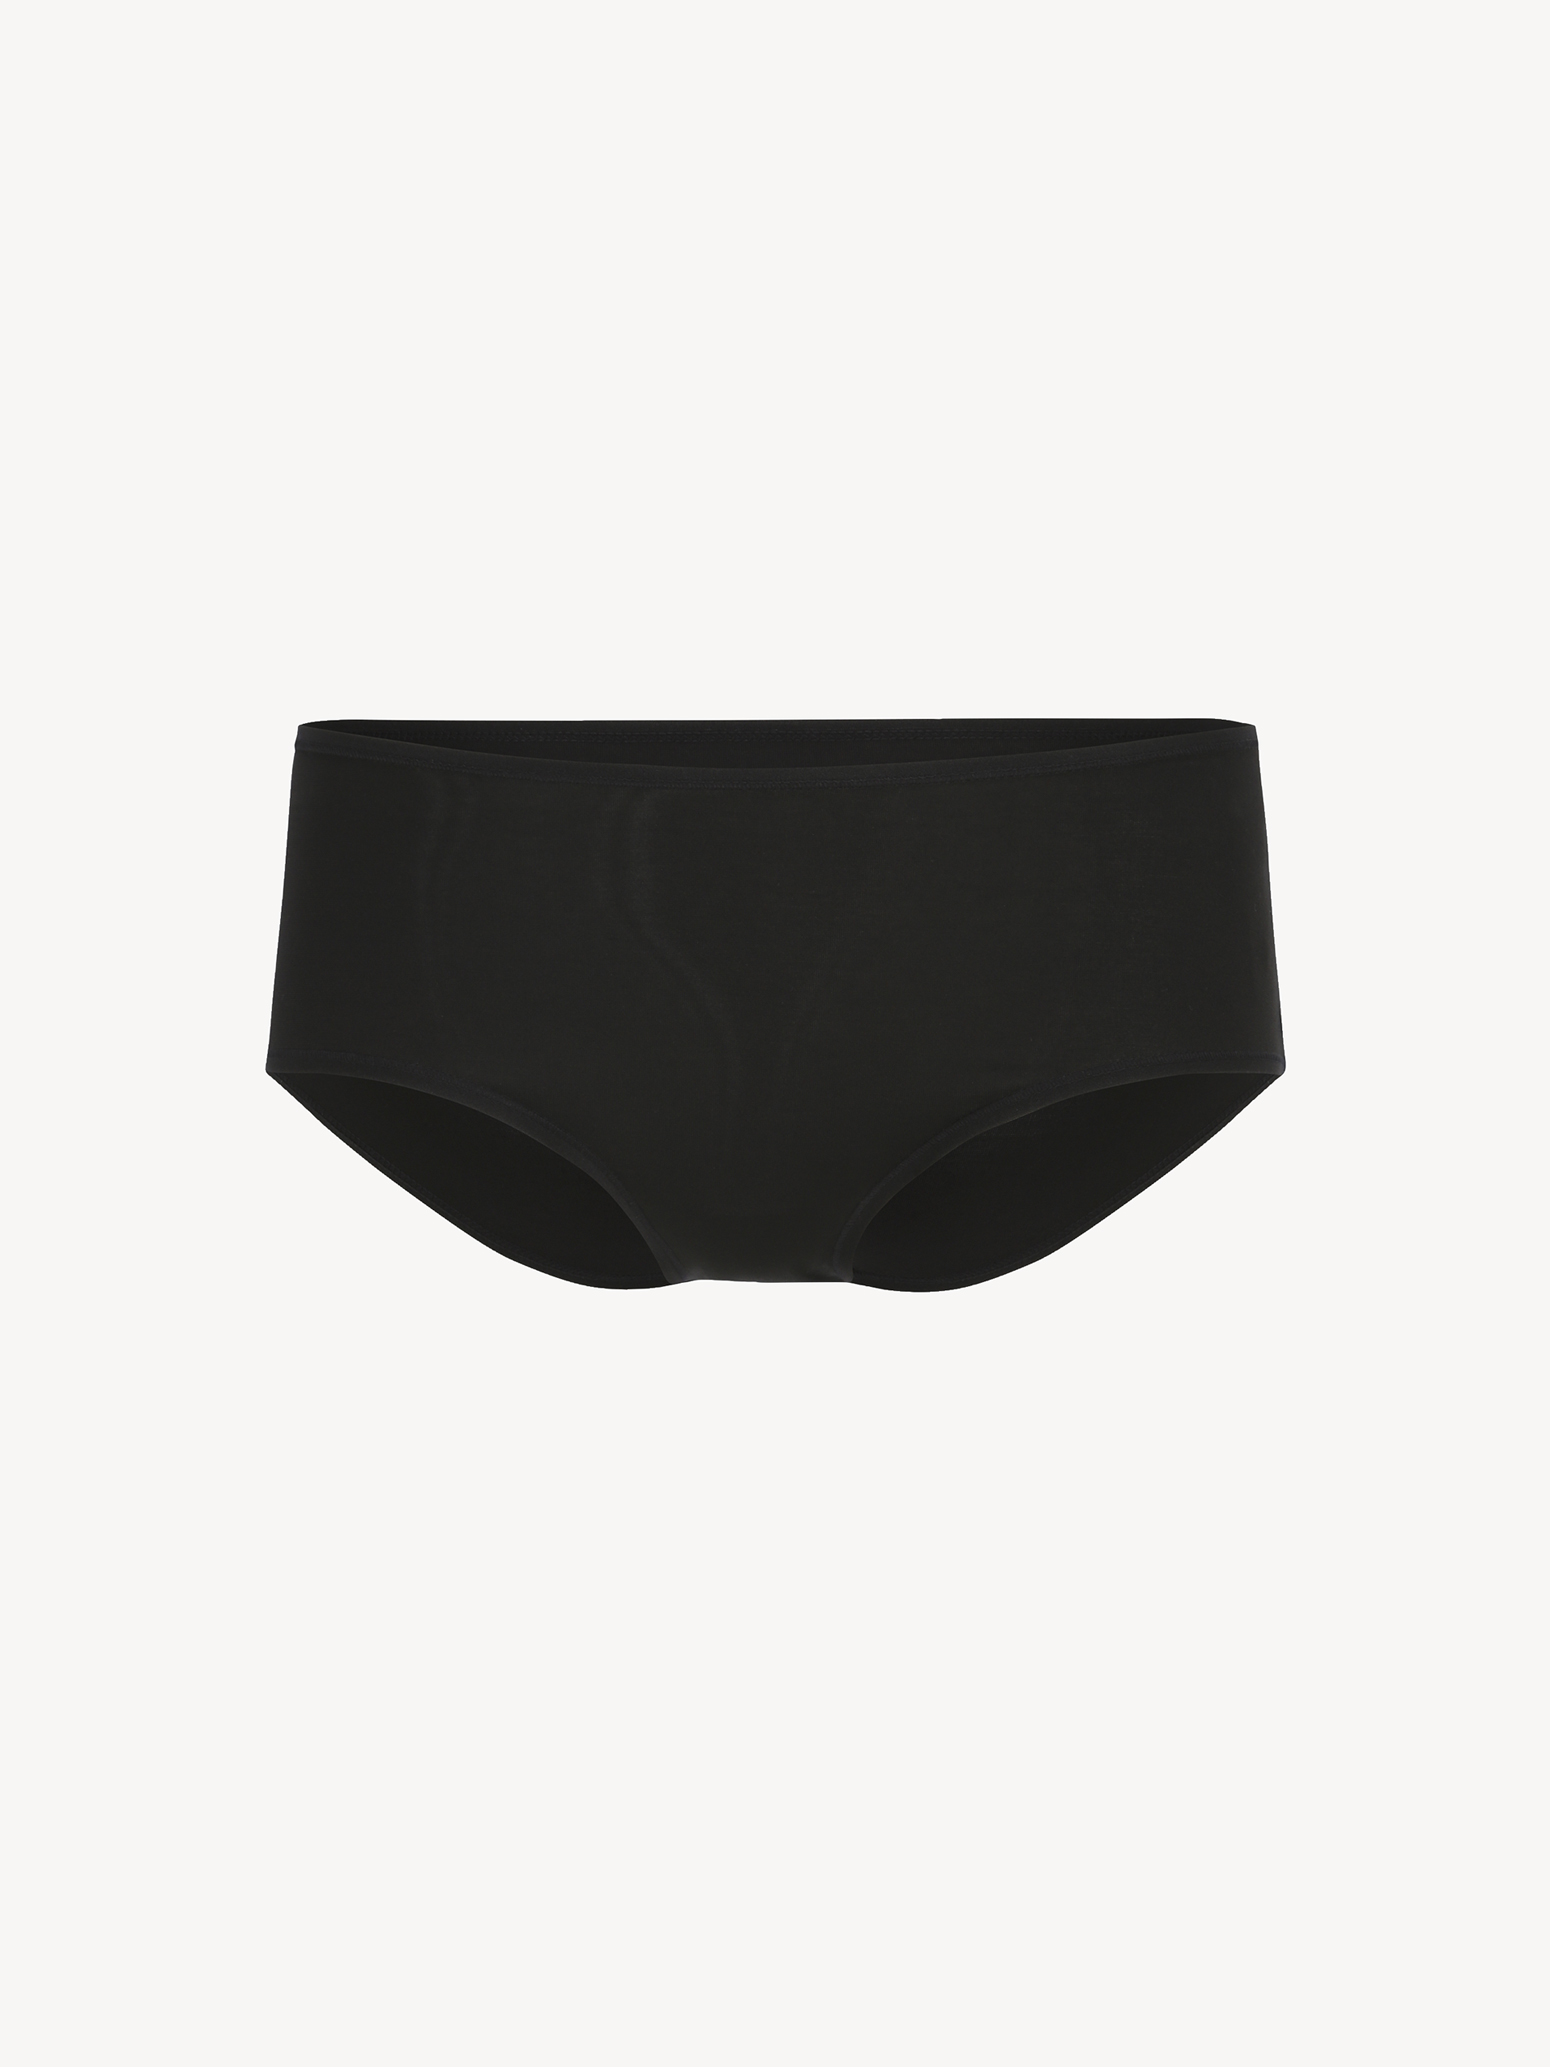 Briefs Pack of 3 - black TAW0195-80004: Buy Tamaris Underwear online!